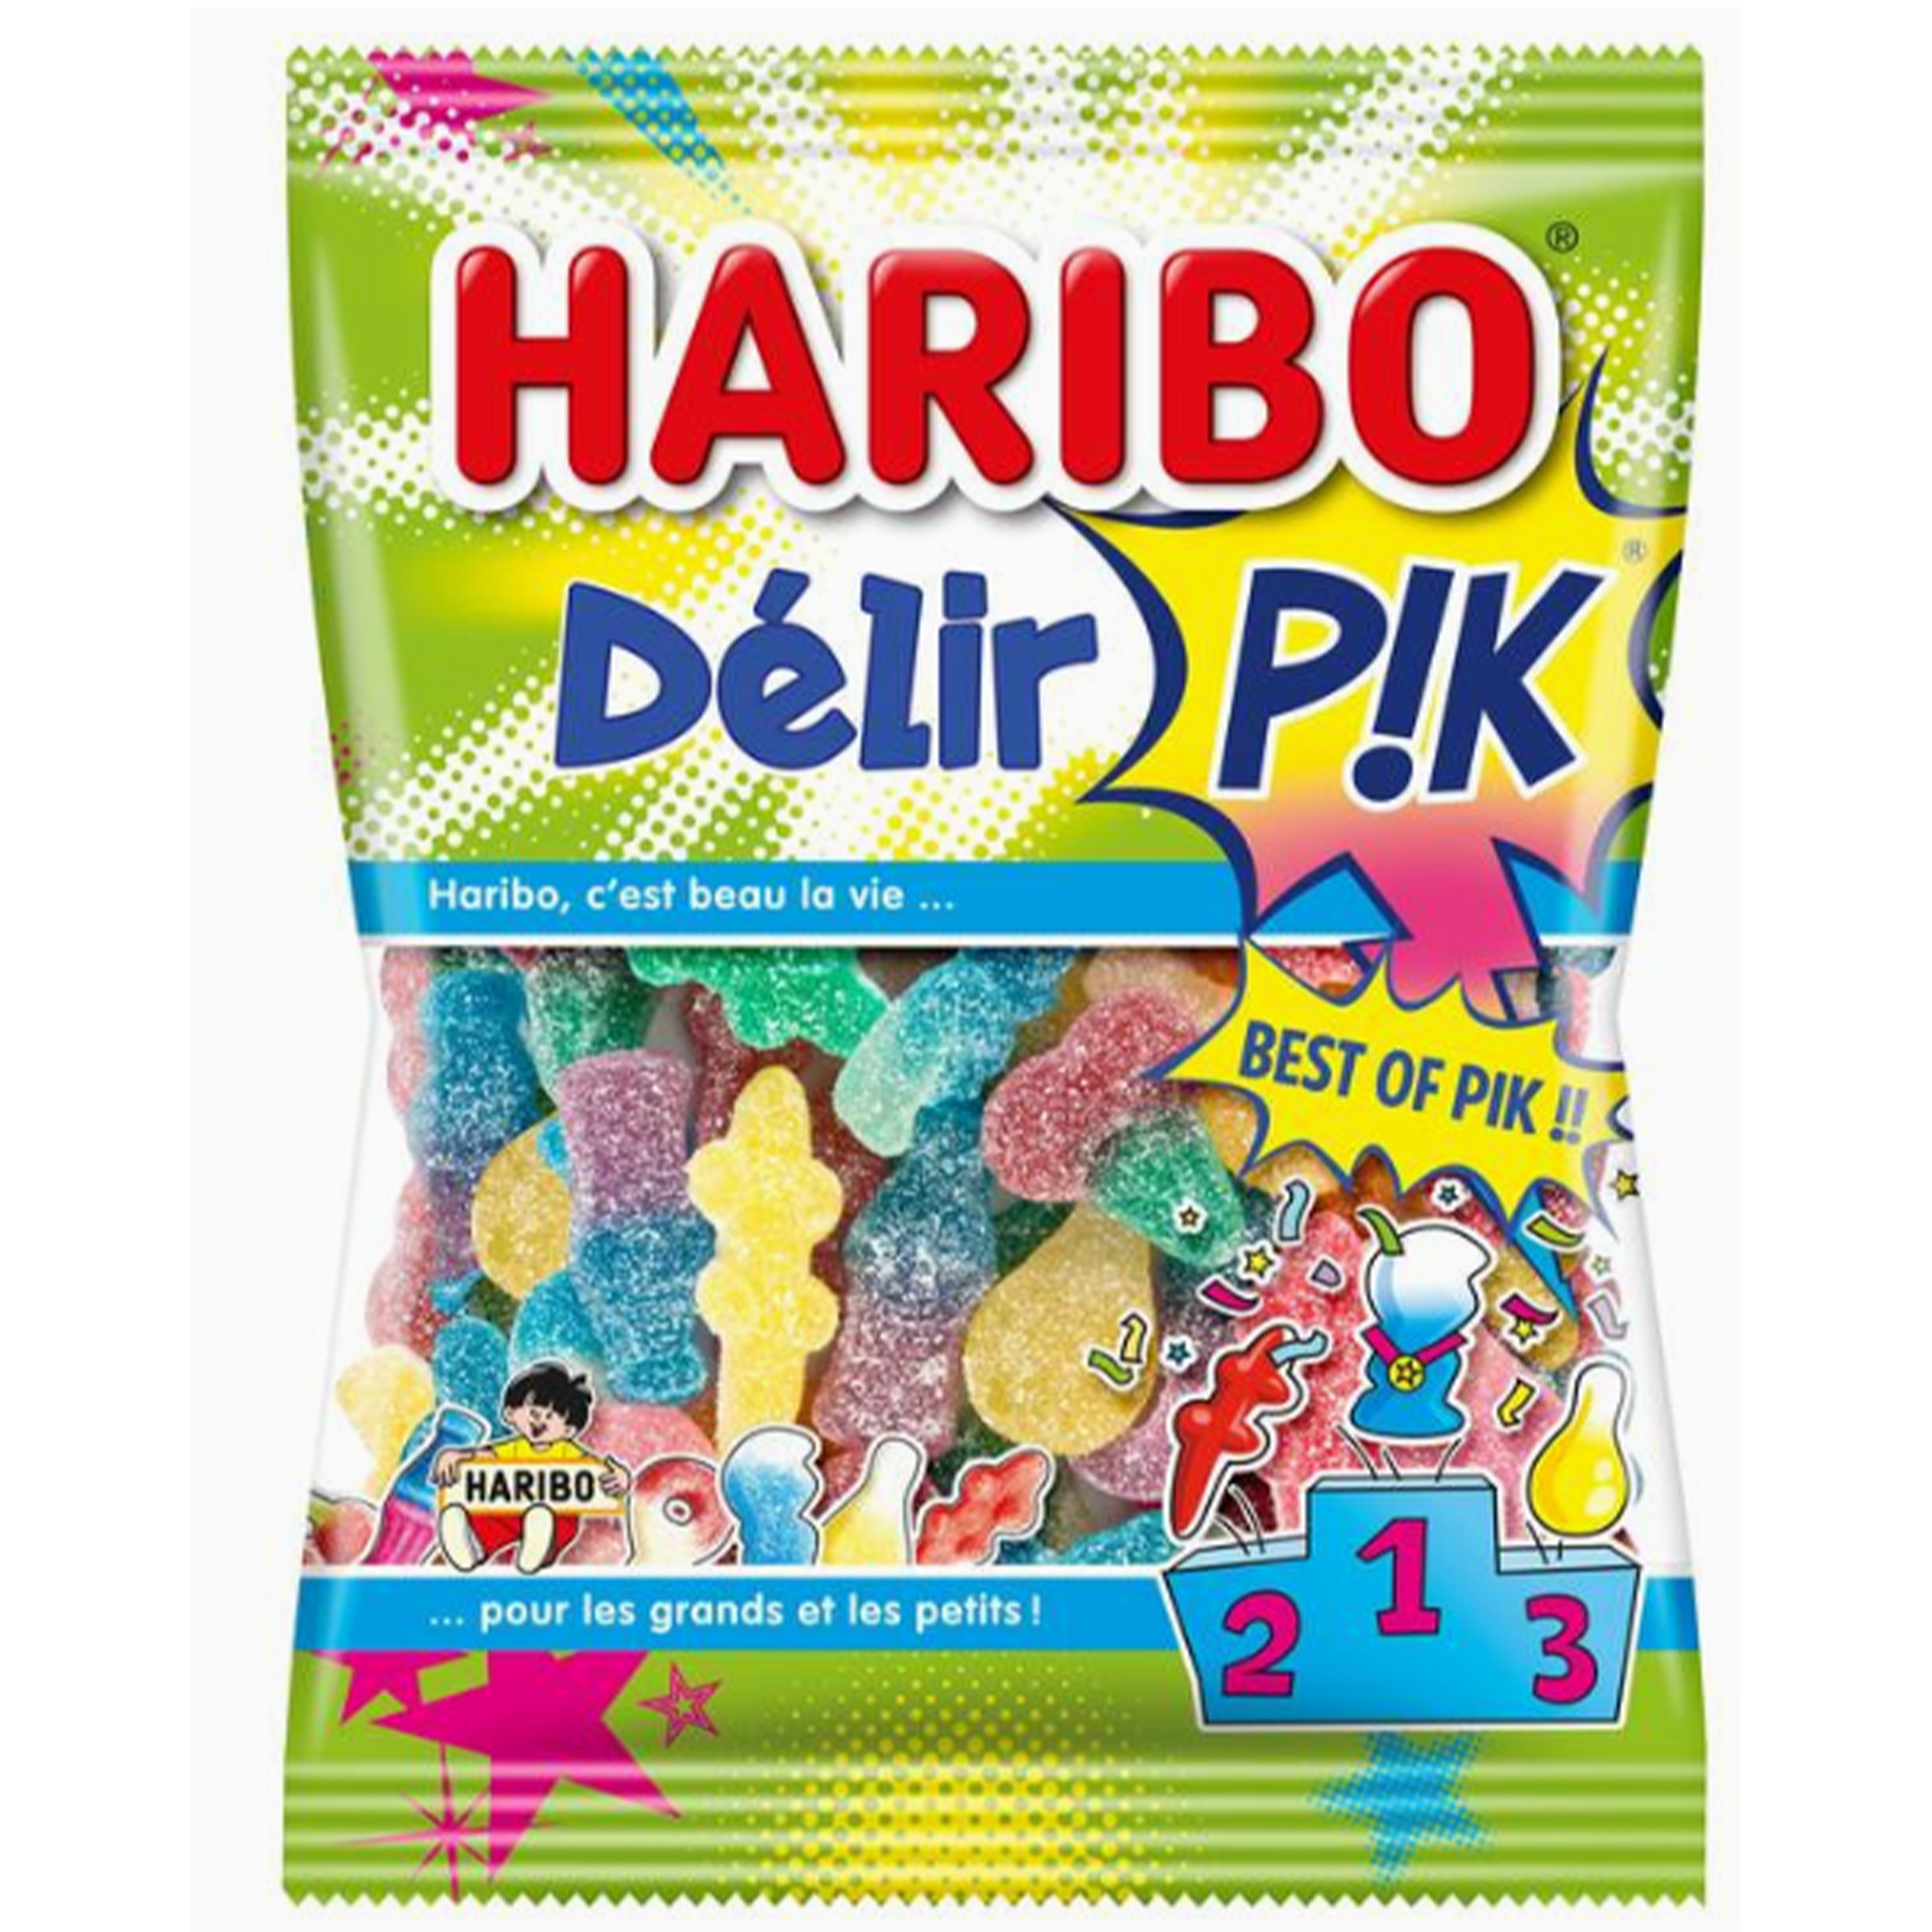 Haribo - Delir P!K (Europe)